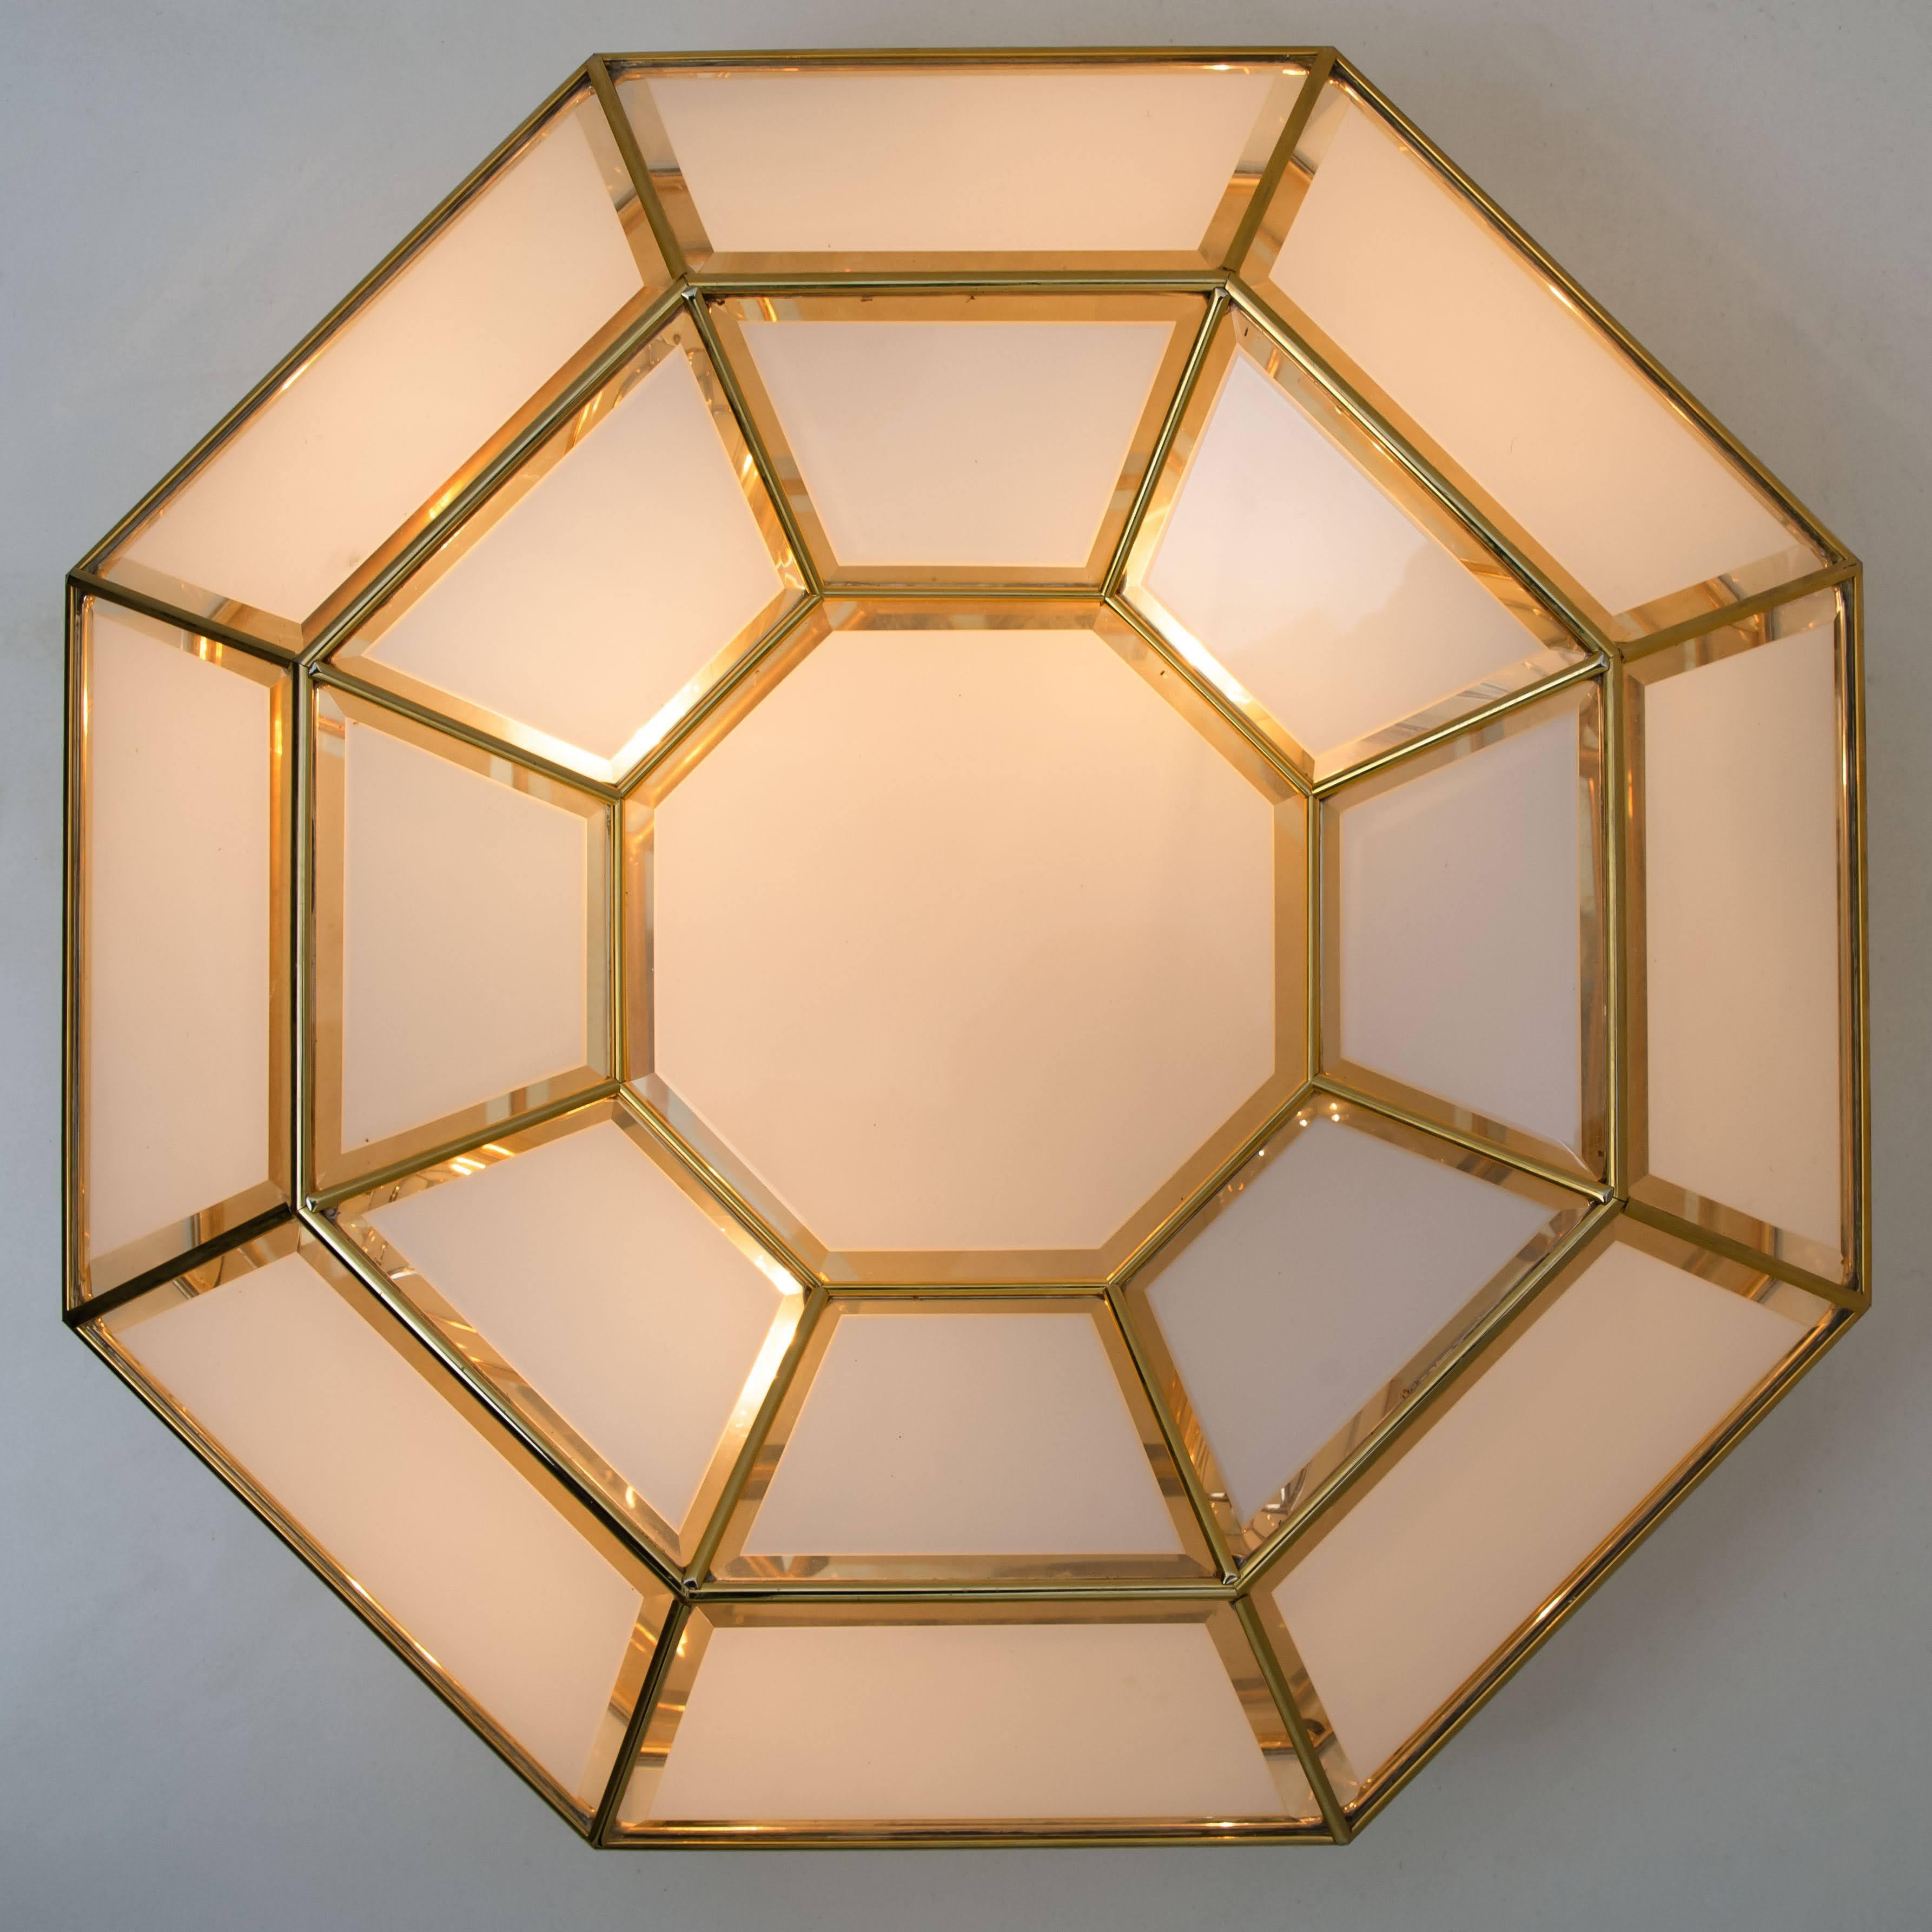 European Octagonal Brass Glass Flush Mounts or Wall Lights 1970